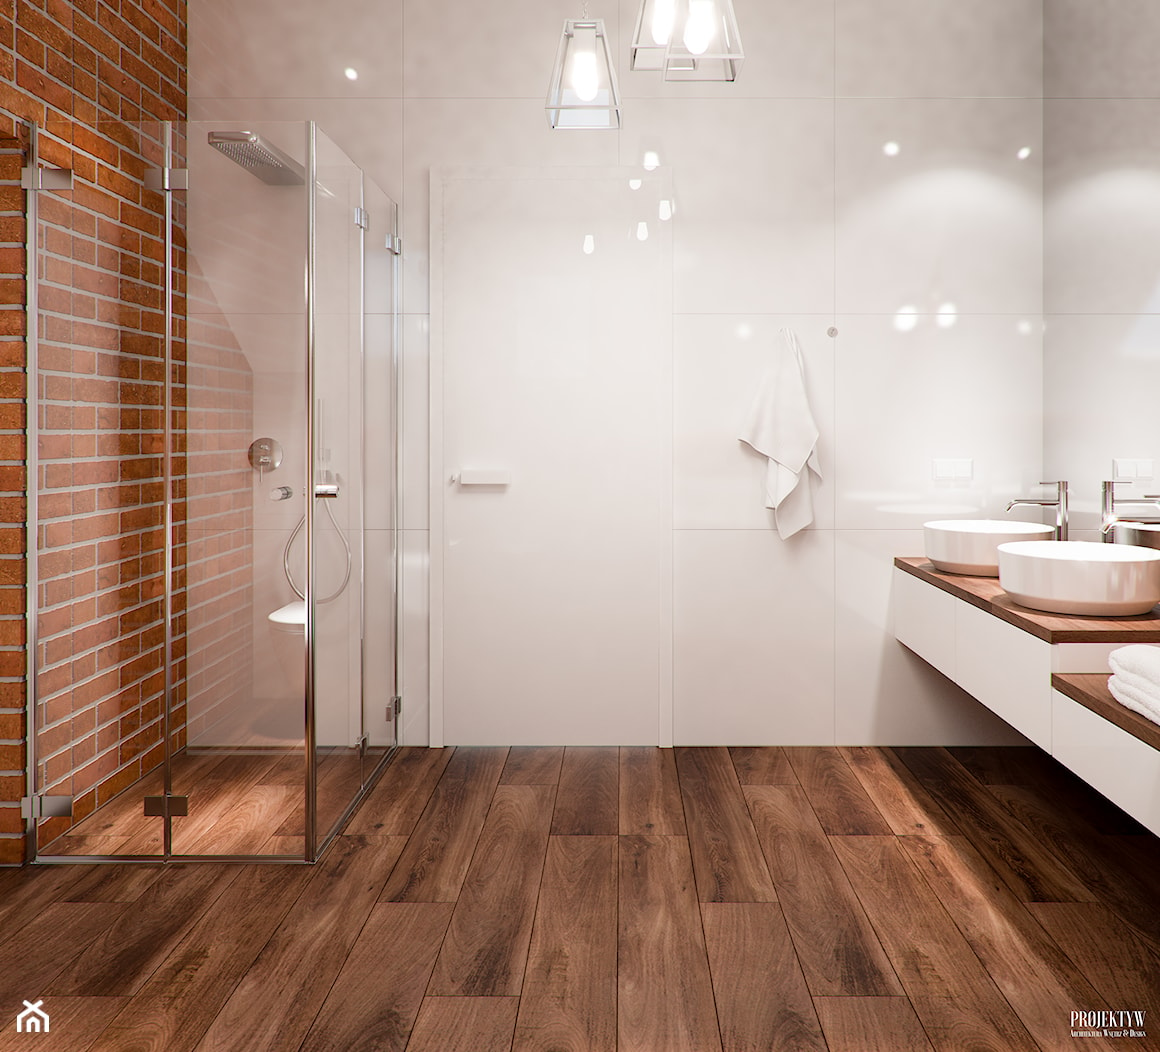 Projekty Łazienek. Wrocław - Duża jako pokój kąpielowy z dwoma umywalkami łazienka, styl nowoczesny - zdjęcie od PRØJEKTYW | Architektura Wnętrz & Design - Homebook